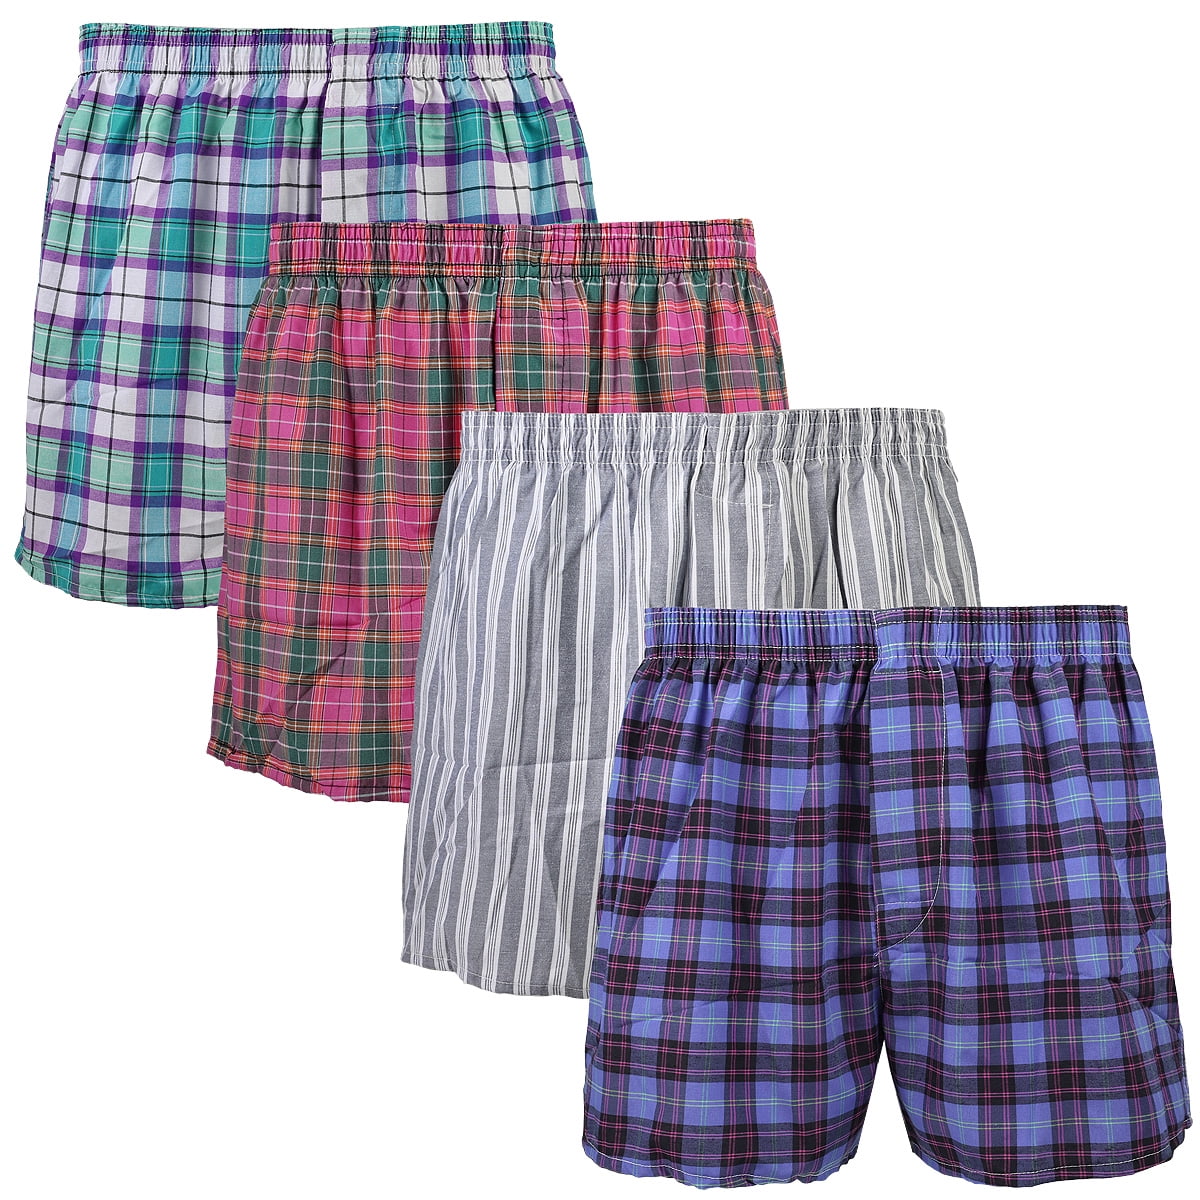 Falari 4-Pack Men's Boxer Underwear 100% Cotton - Walmart.com